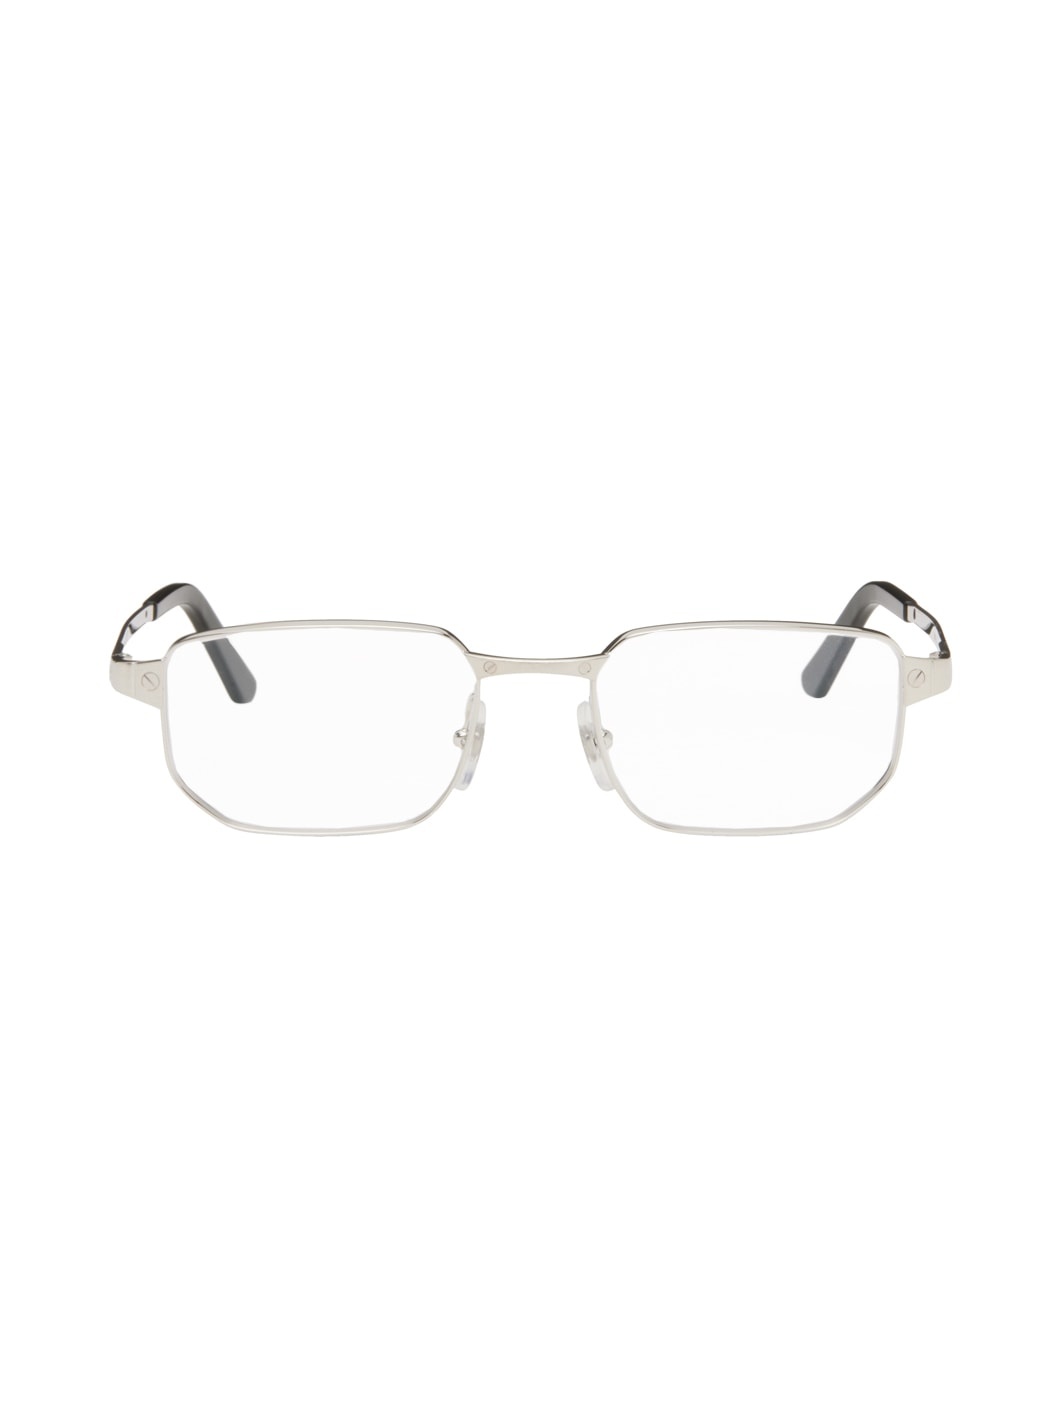 Silver Rectangular Glasses - 1